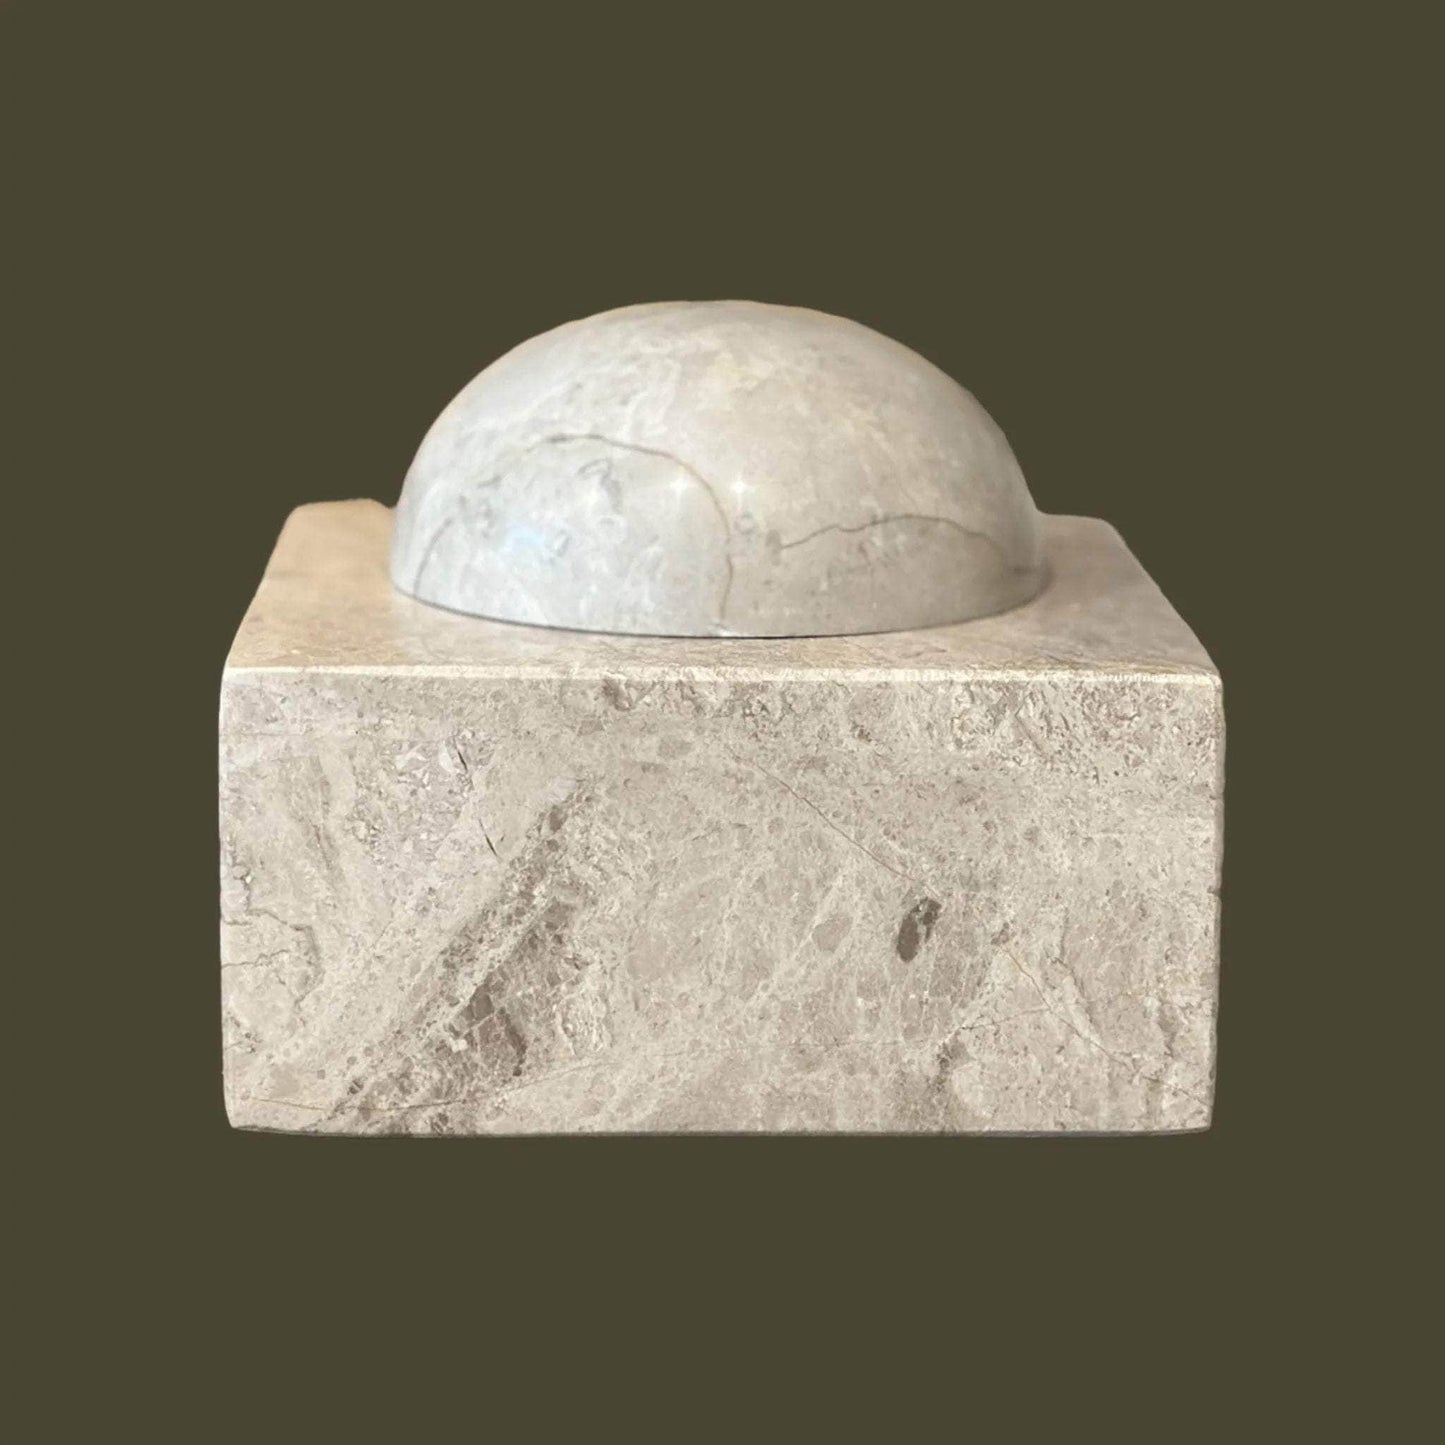 Taj Box: Small Cubed Storage Box in Oyster Italian Marble